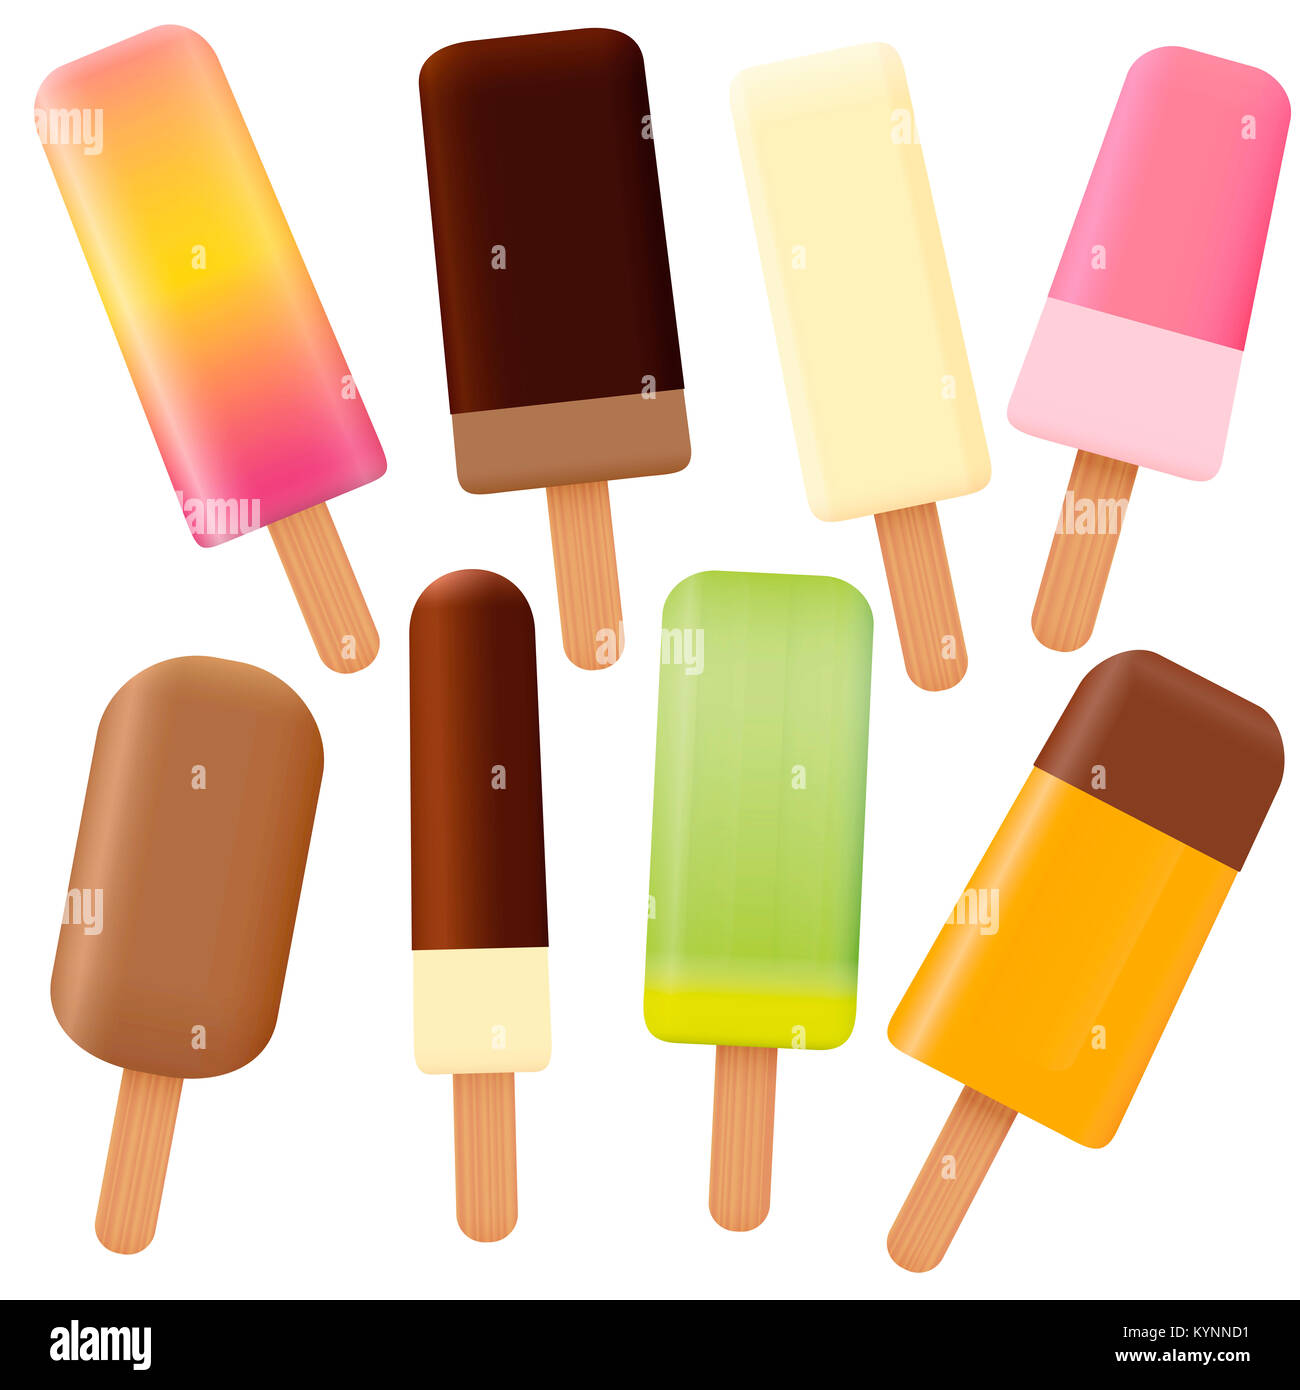 Eis am Stiel - Summer Fun ice-lose angeordnete von acht verschiedenen am Stiel - Abbildung auf weißen Hintergrund. Stockfoto